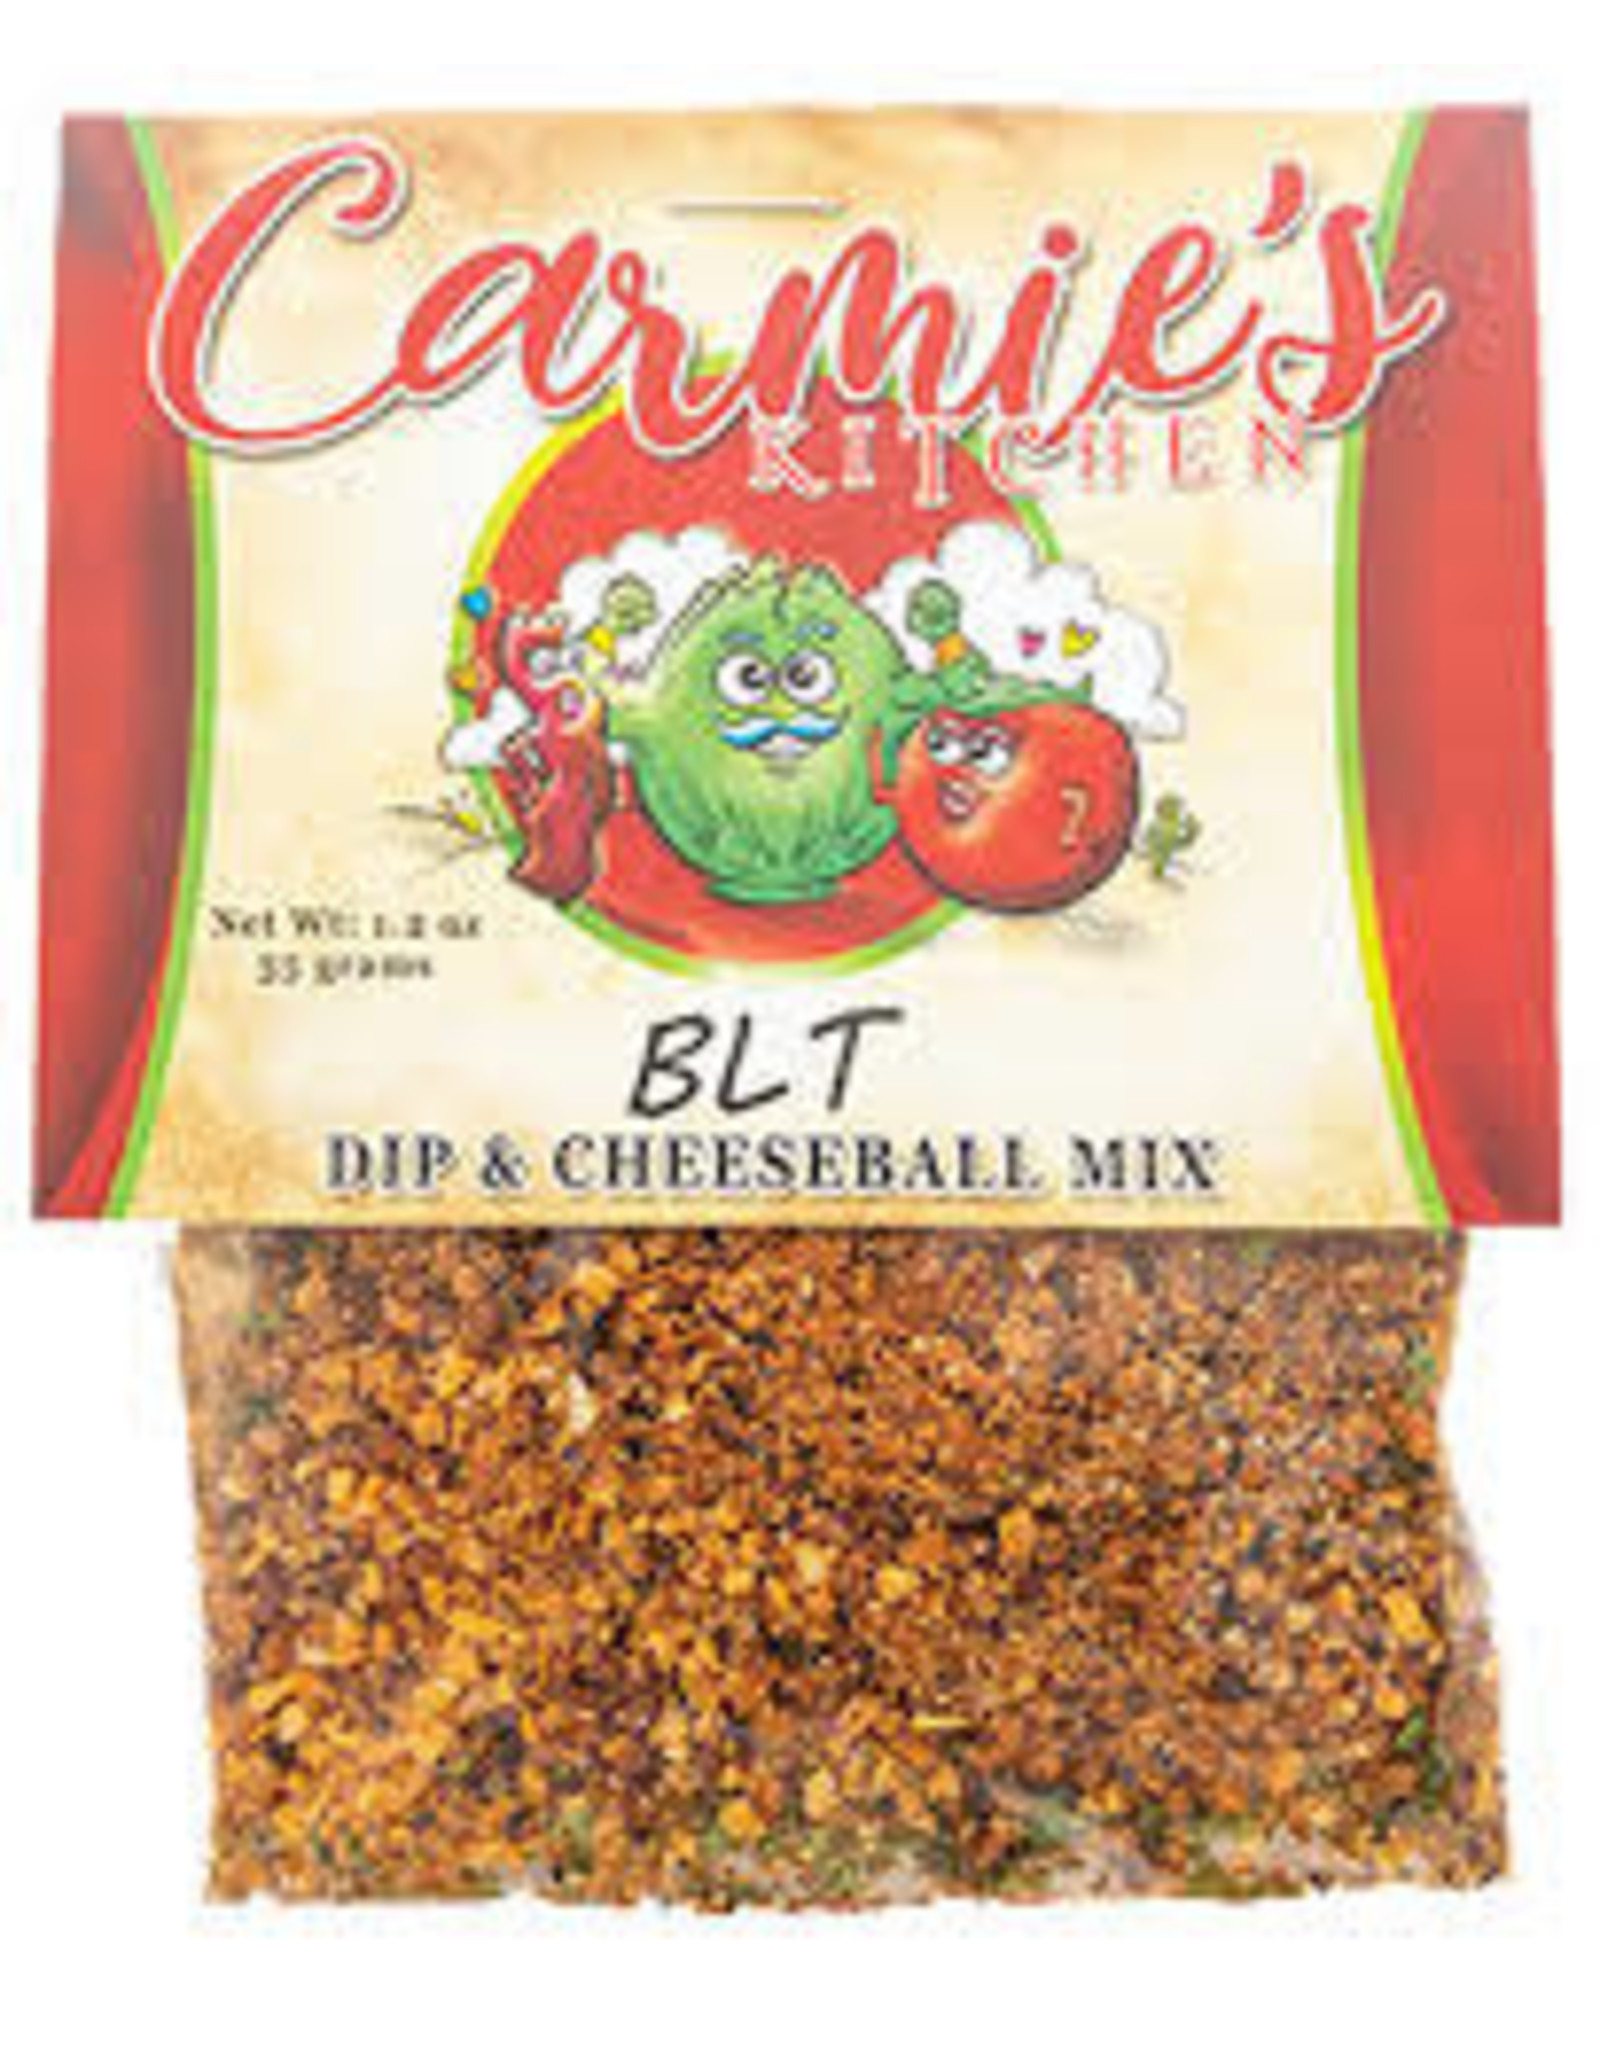 BLT Dip & Cheeseball Mix